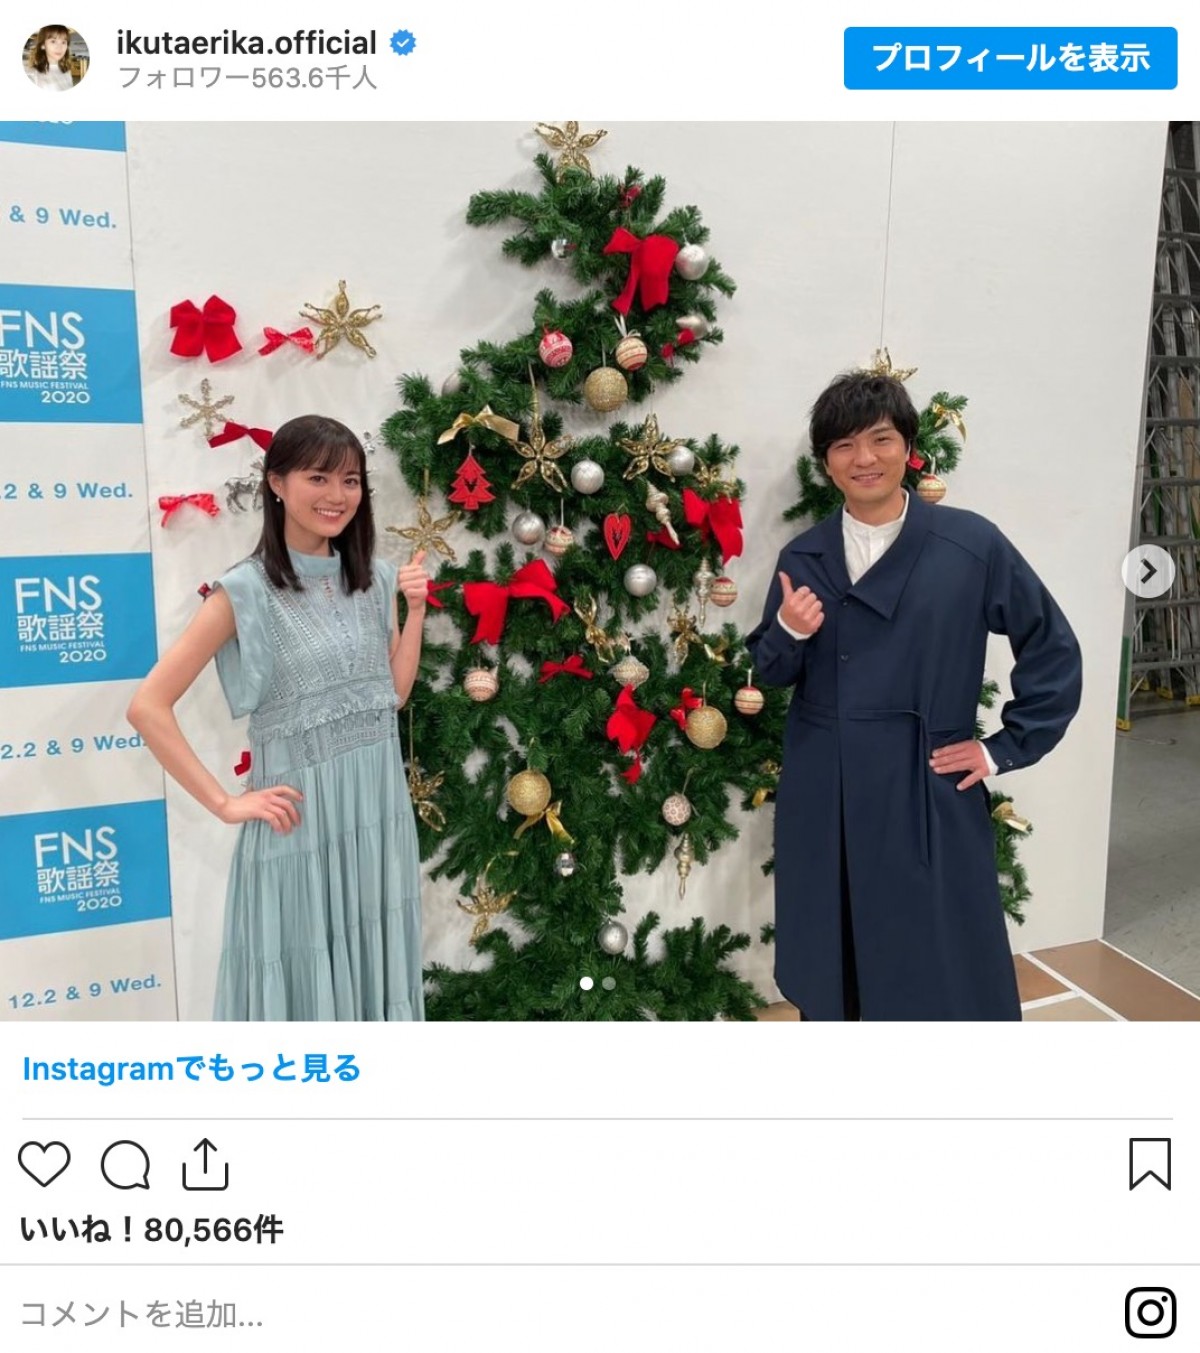 乃木坂46・生田絵梨花、『FNS歌謡祭』森山直太朗とのオフショット披露「幸せだったぁ」